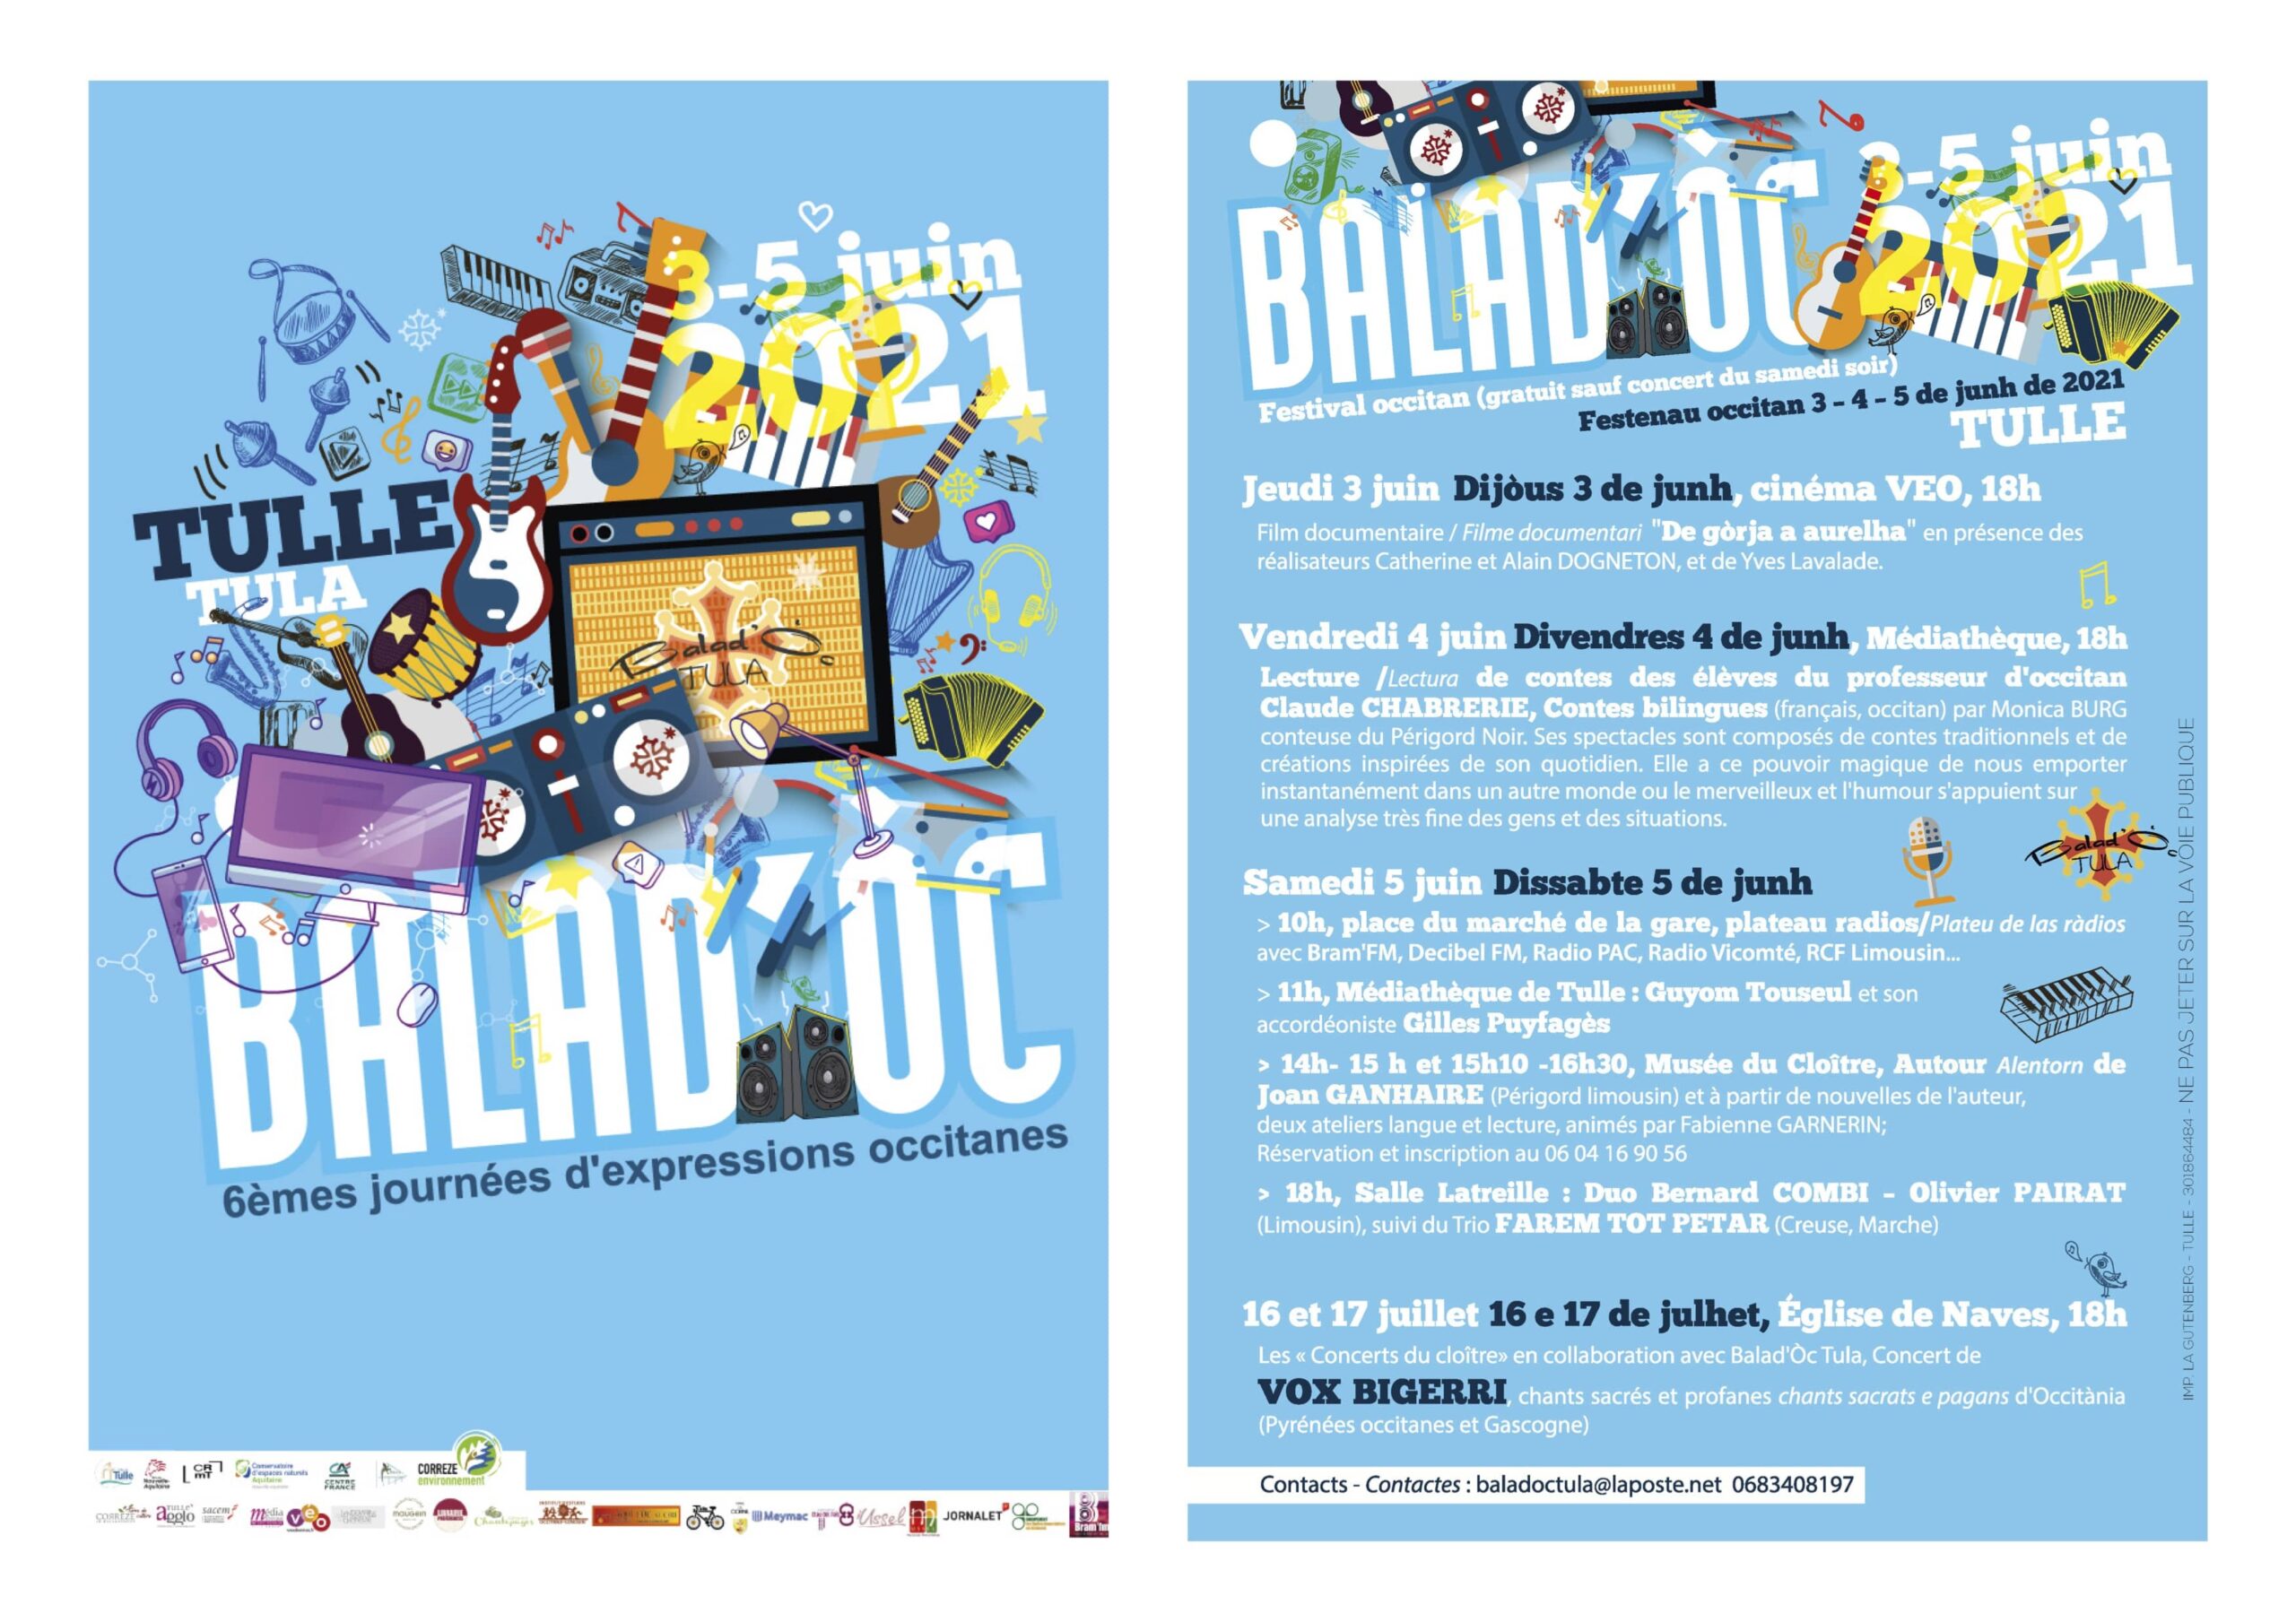 Film documentaire sur Yves Lavalade dans le cadre du festival Baladoc